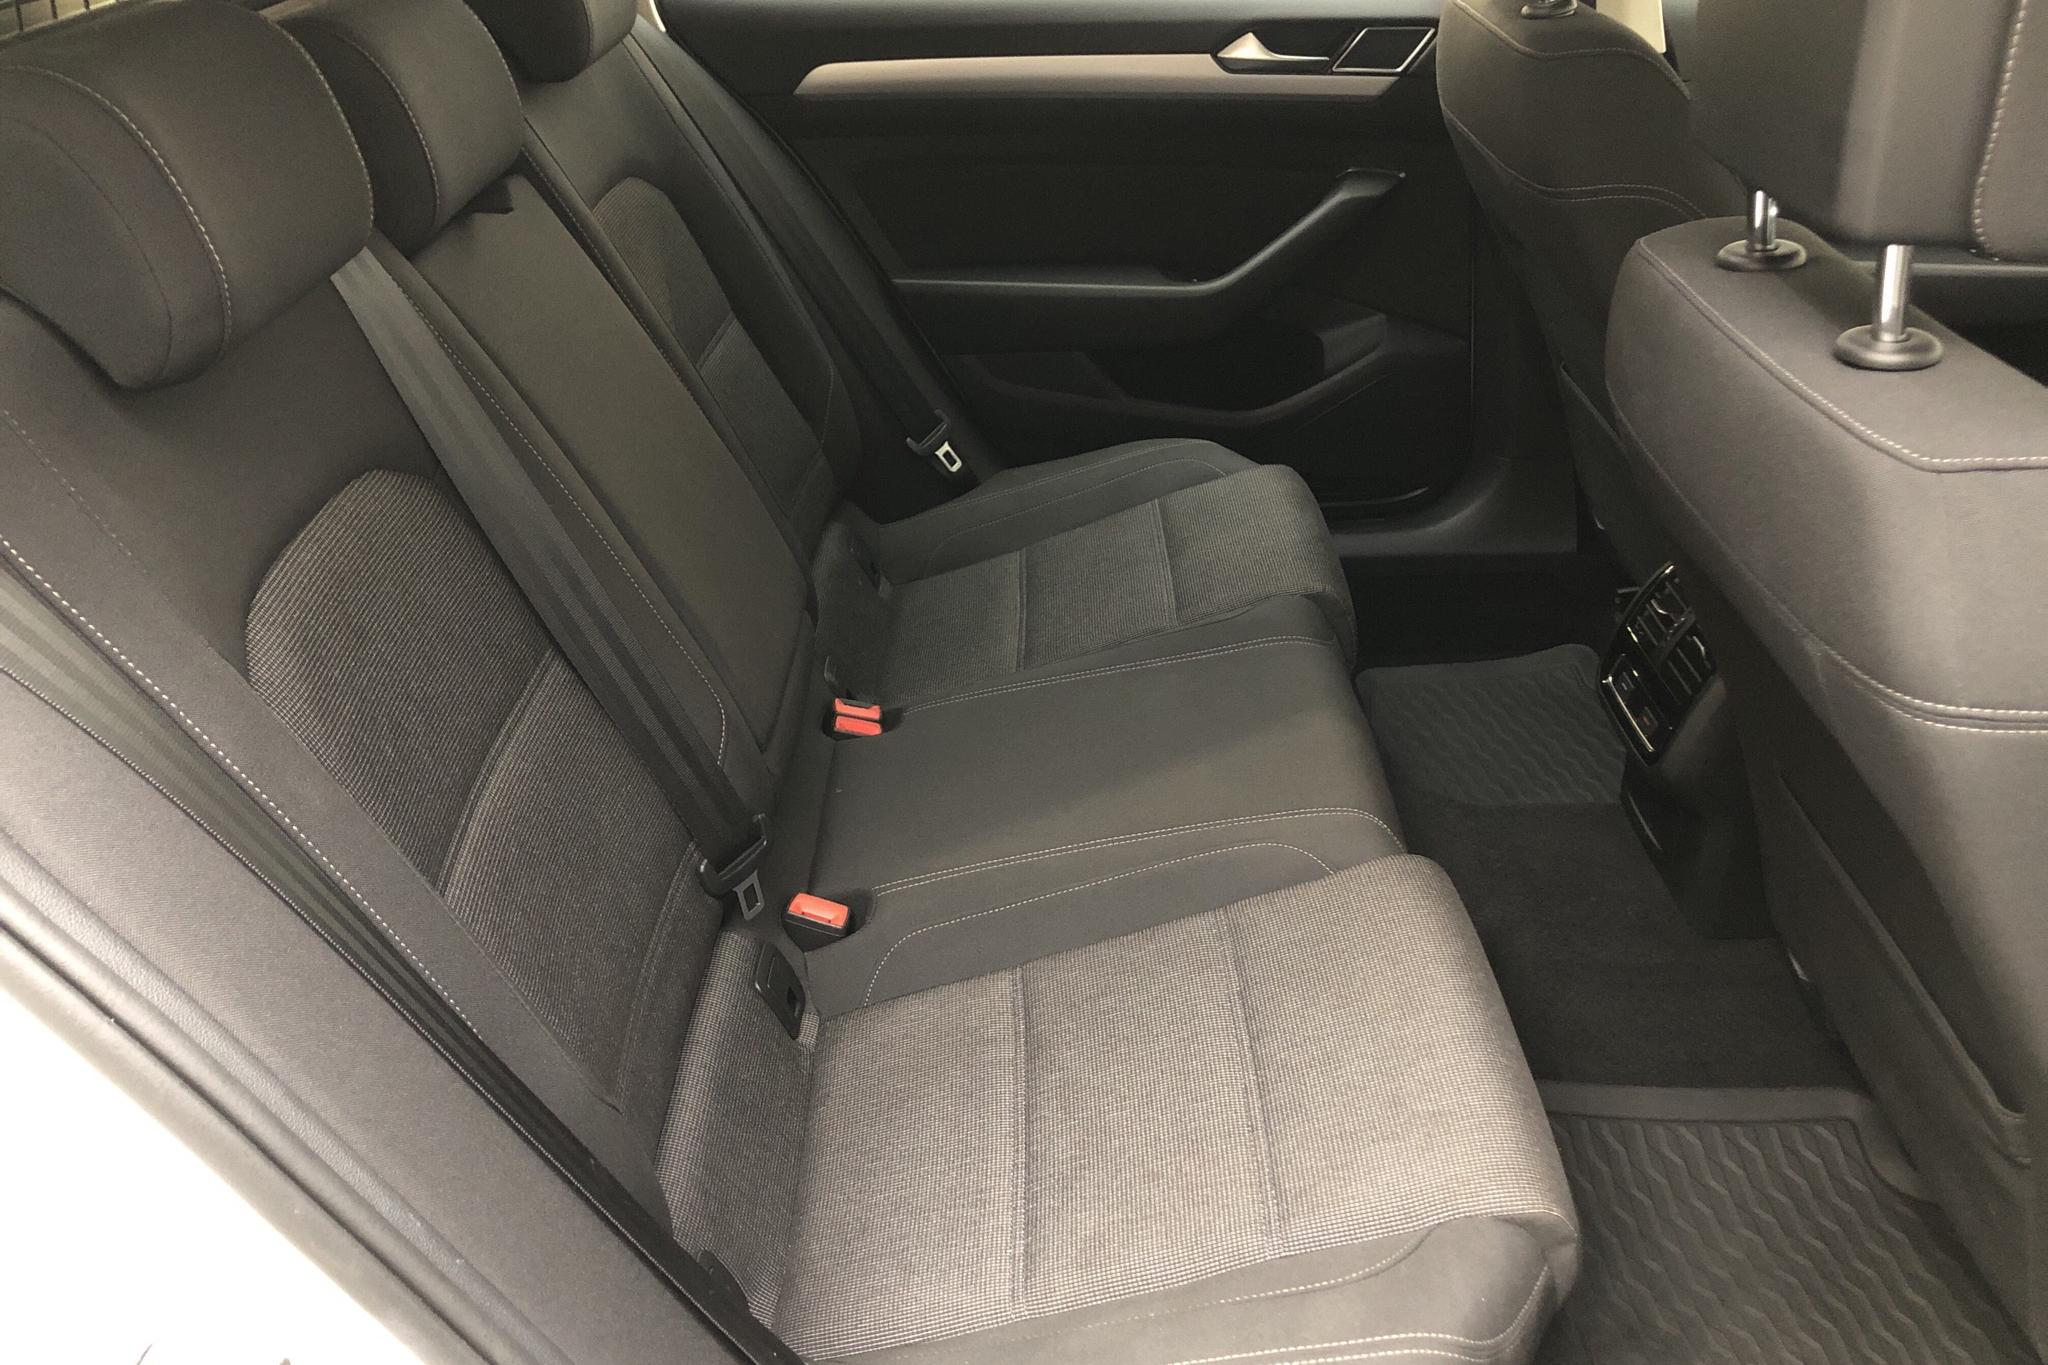 VW Passat 2.0 TDI Sportscombi (150hk) - 9 168 mil - Automat - vit - 2019